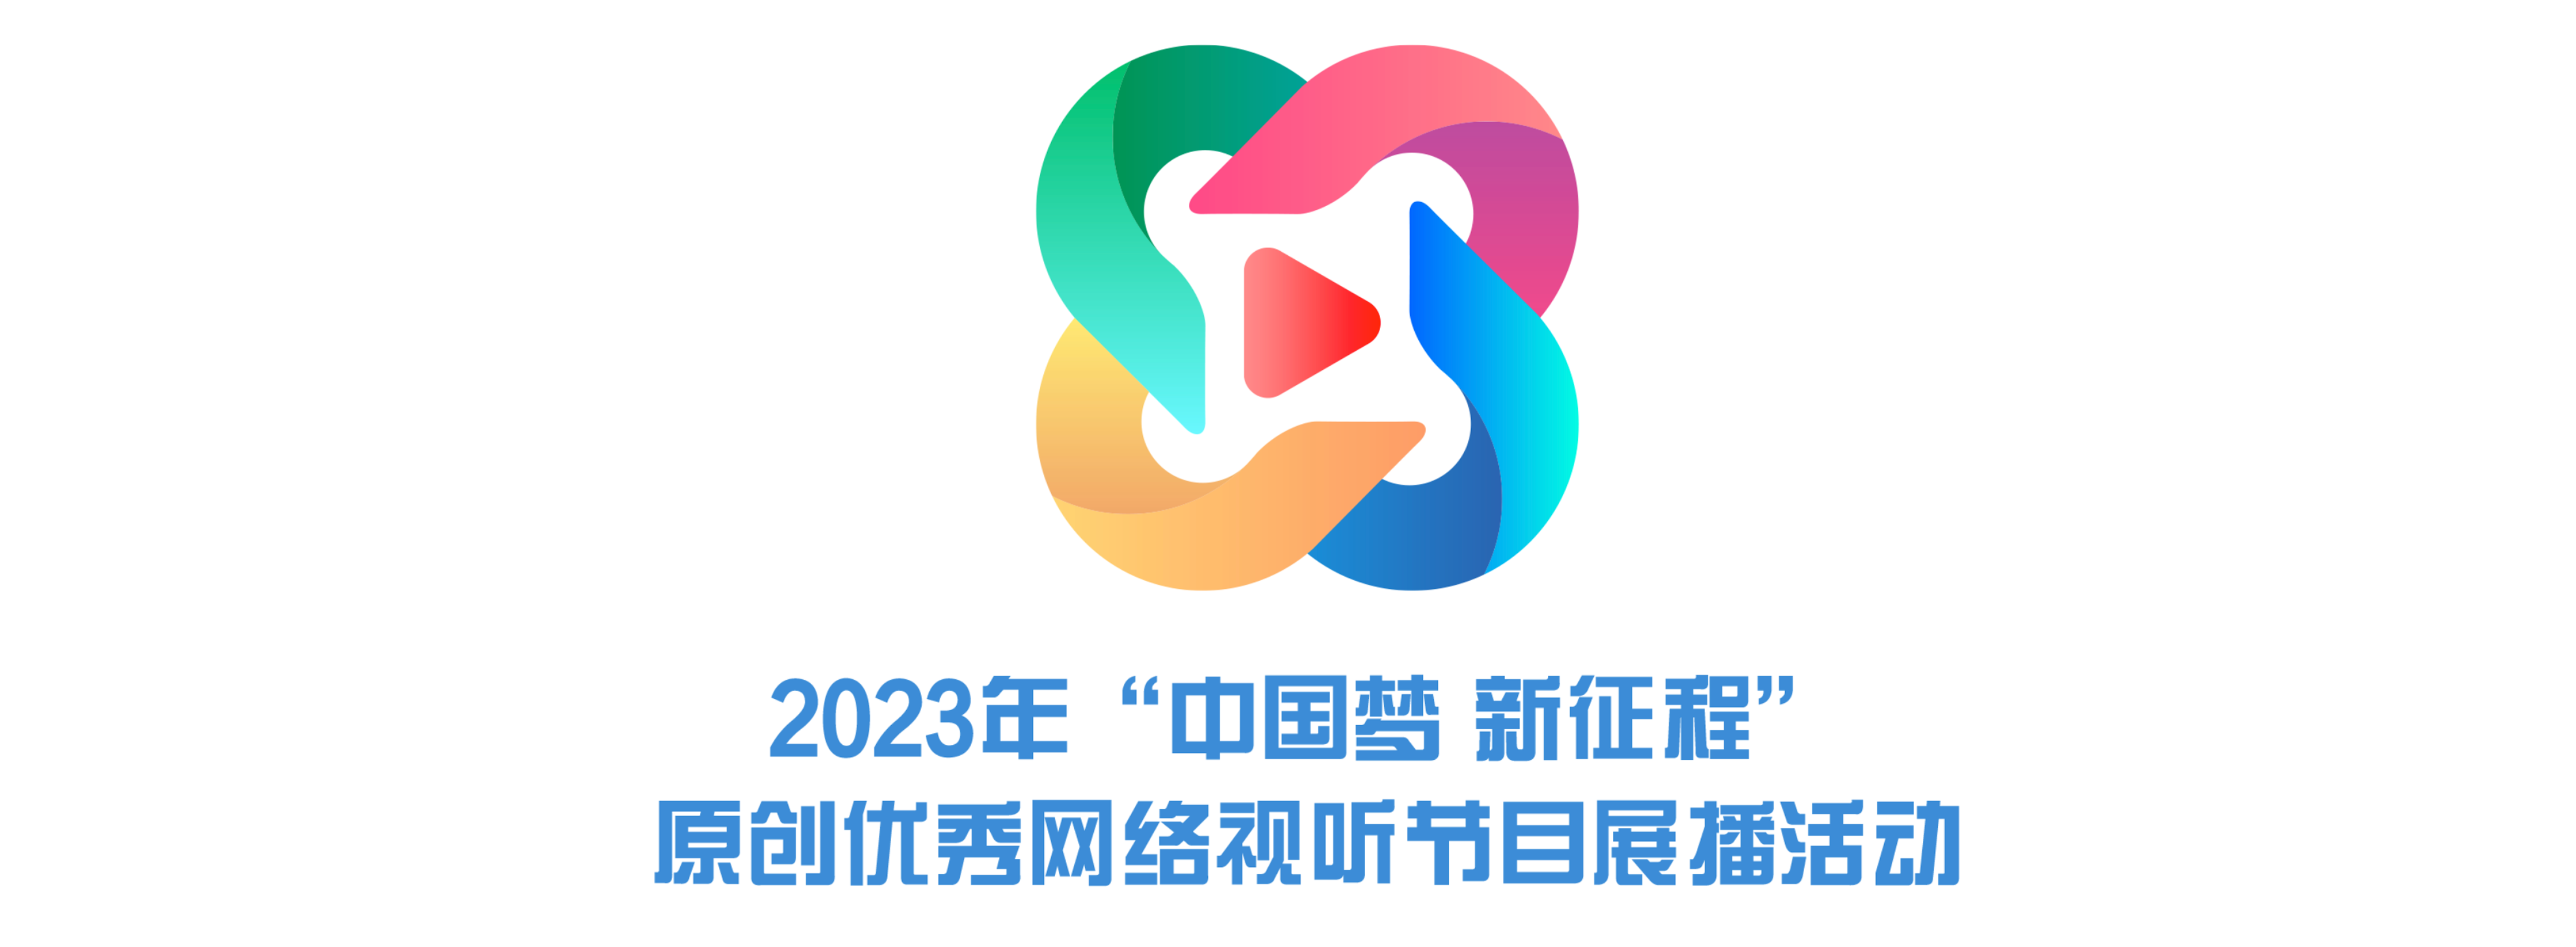 专题丨2023年“中国梦 新征程”原创优秀网络视听节目展播活动